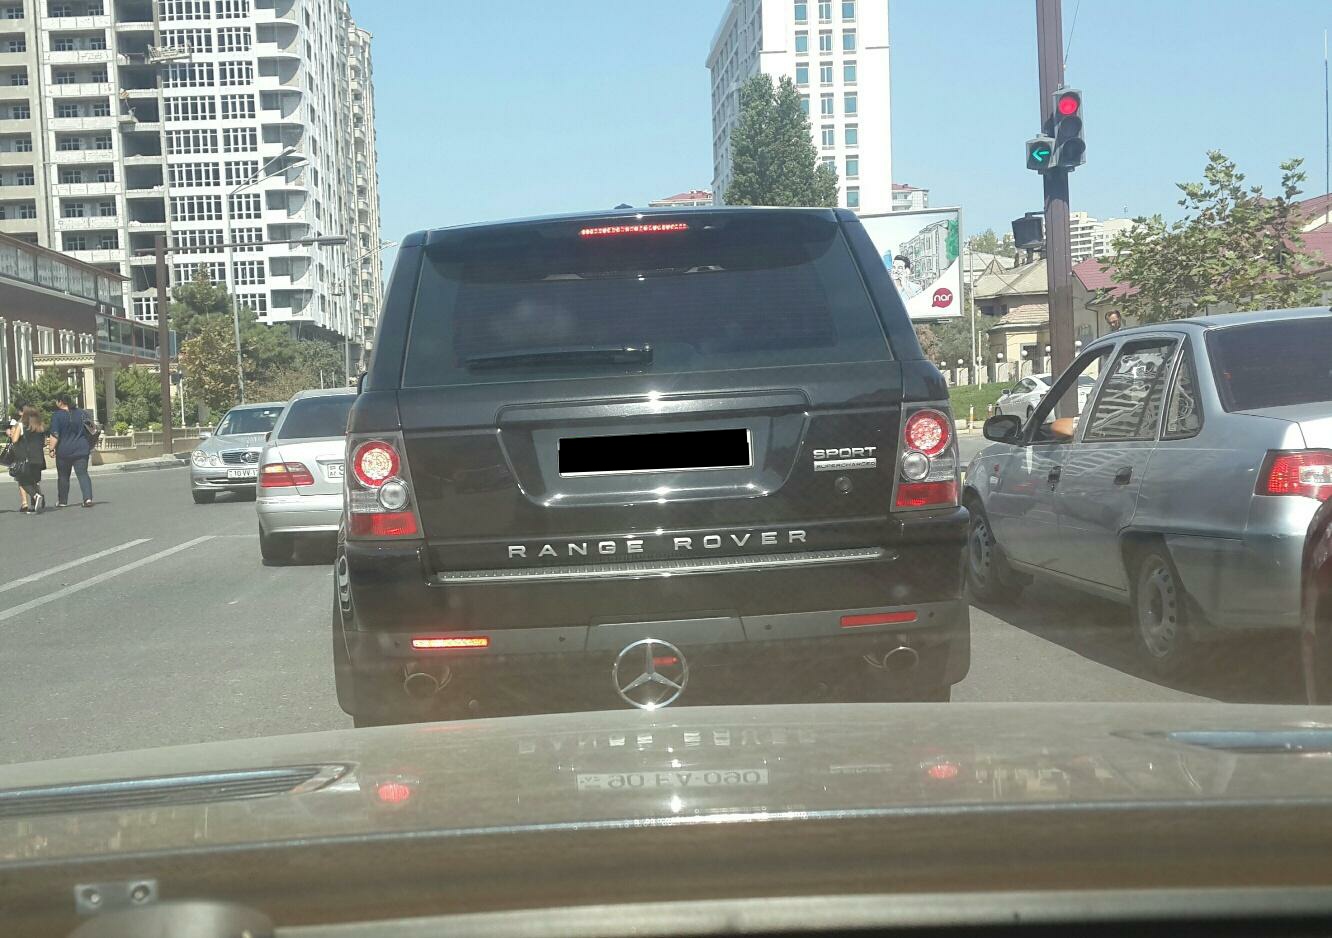 Azərbaycanda narkotacir qohumlar  “Range Rover”lə saxlanıldı - FOTOLAR 